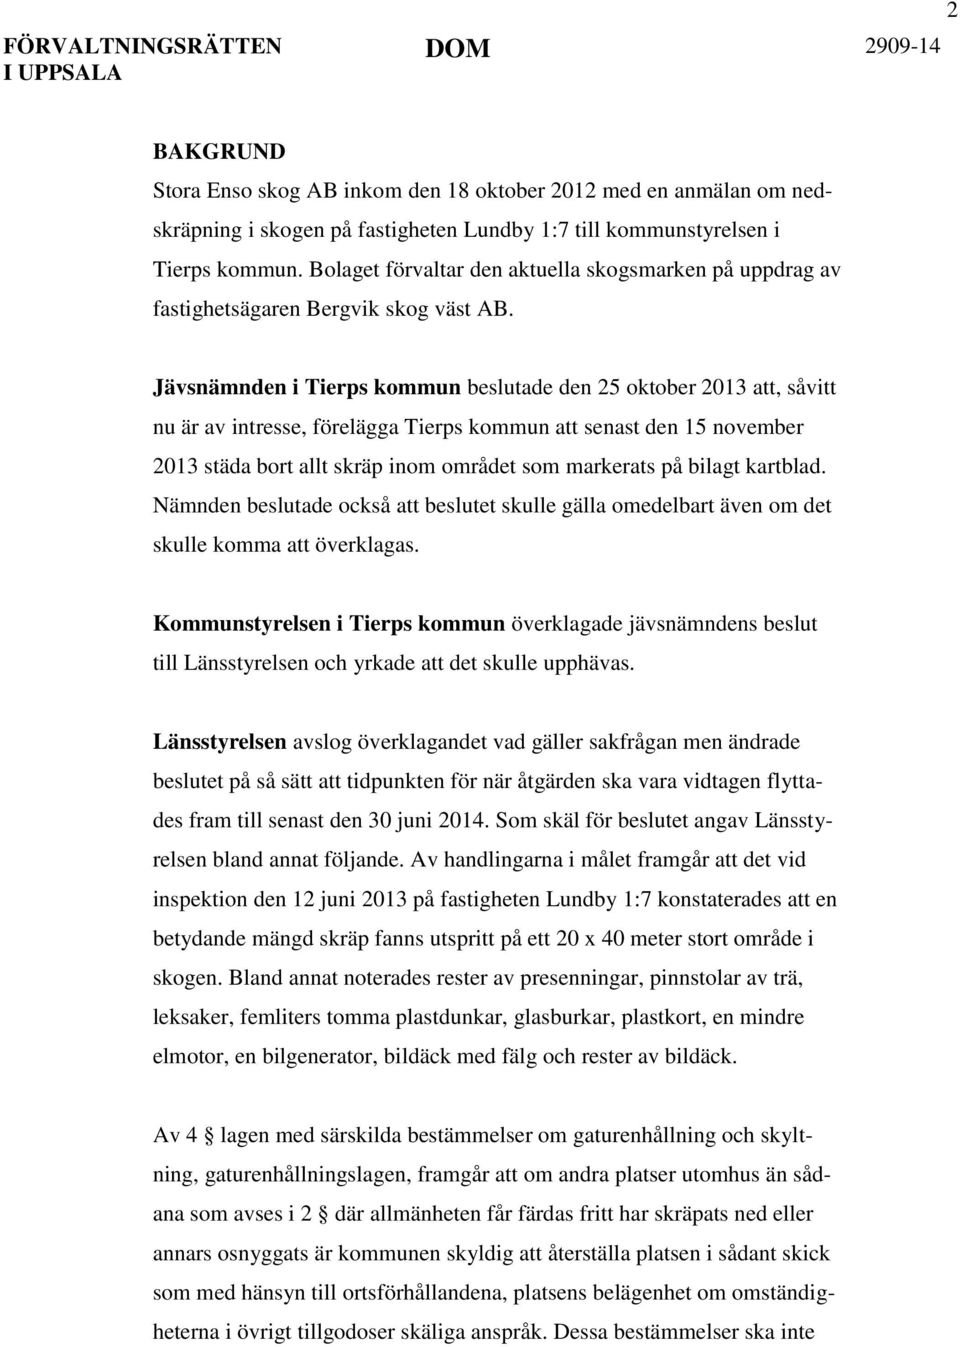 Jävsnämnden i Tierps kommun beslutade den 25 oktober 2013 att, såvitt nu är av intresse, förelägga Tierps kommun att senast den 15 november 2013 städa bort allt skräp inom området som markerats på